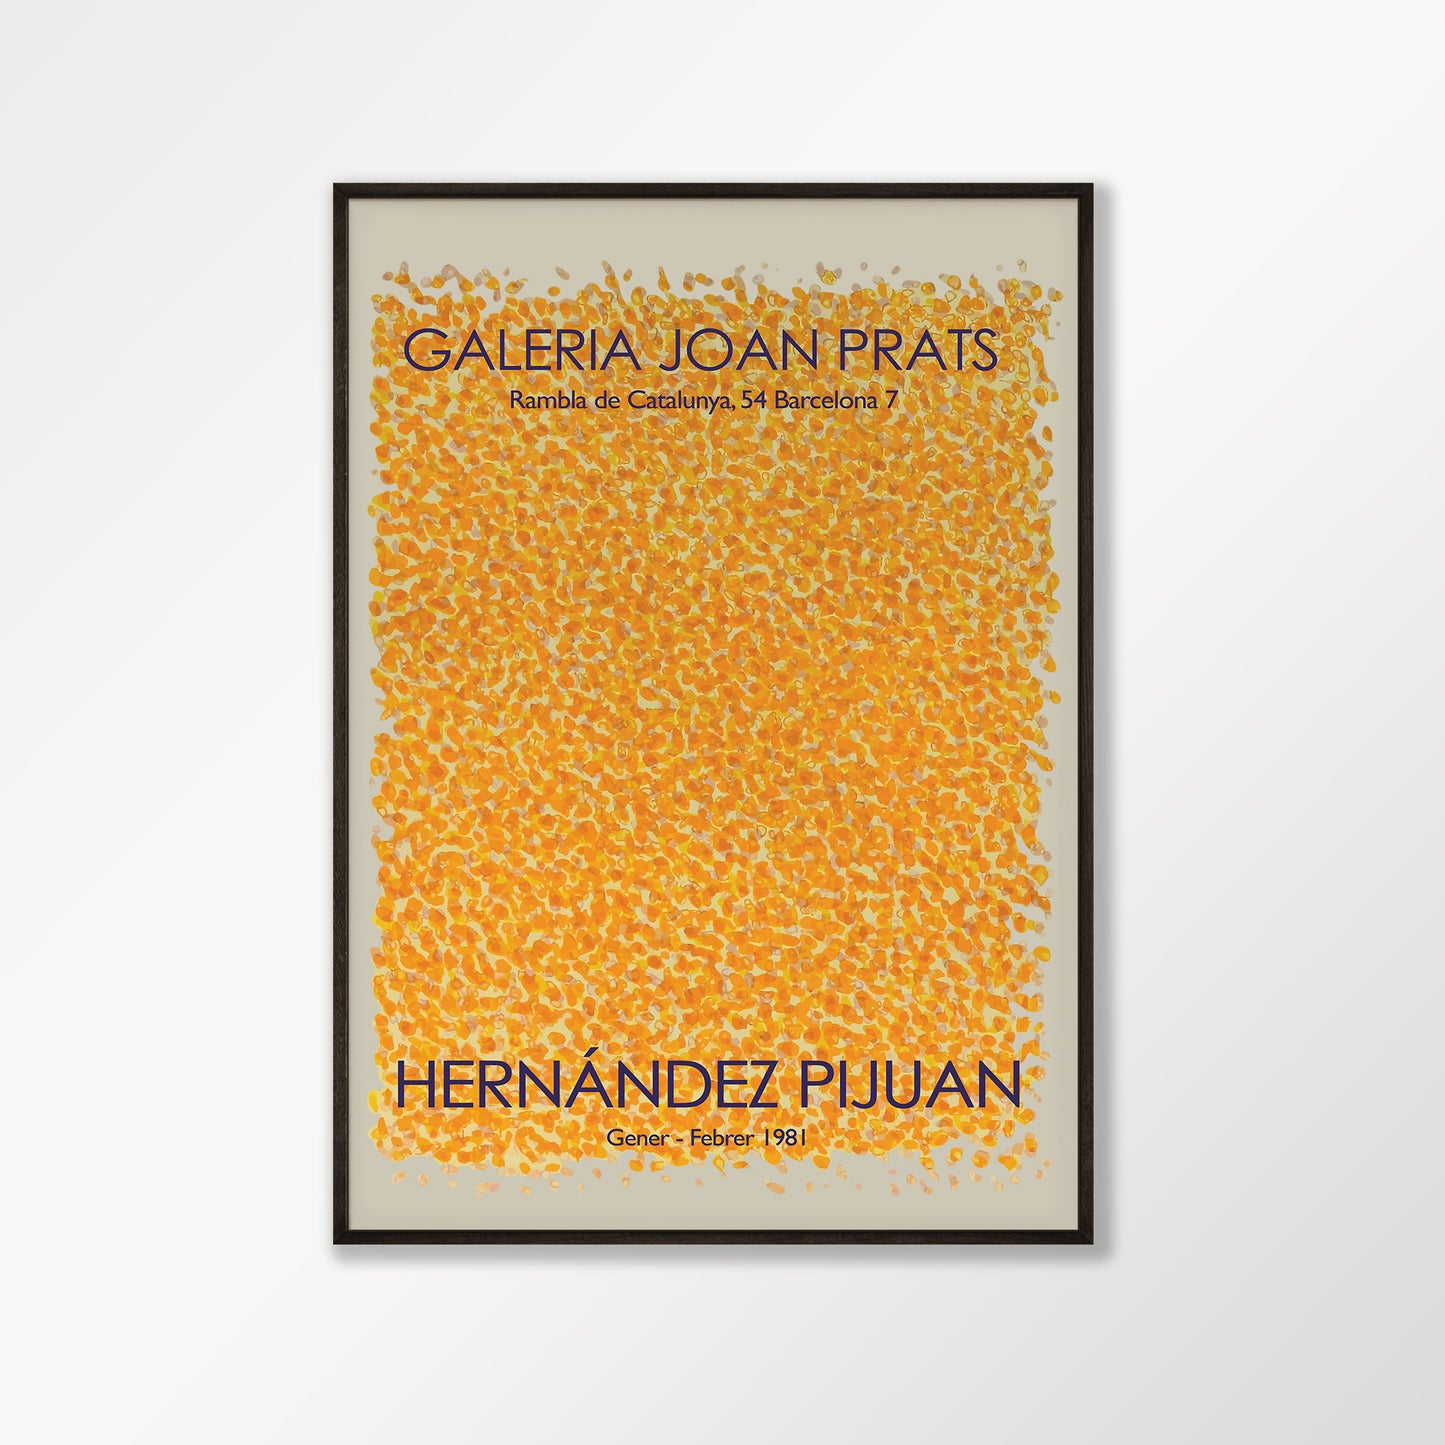 Hernández Pijuan Exhibition Poster